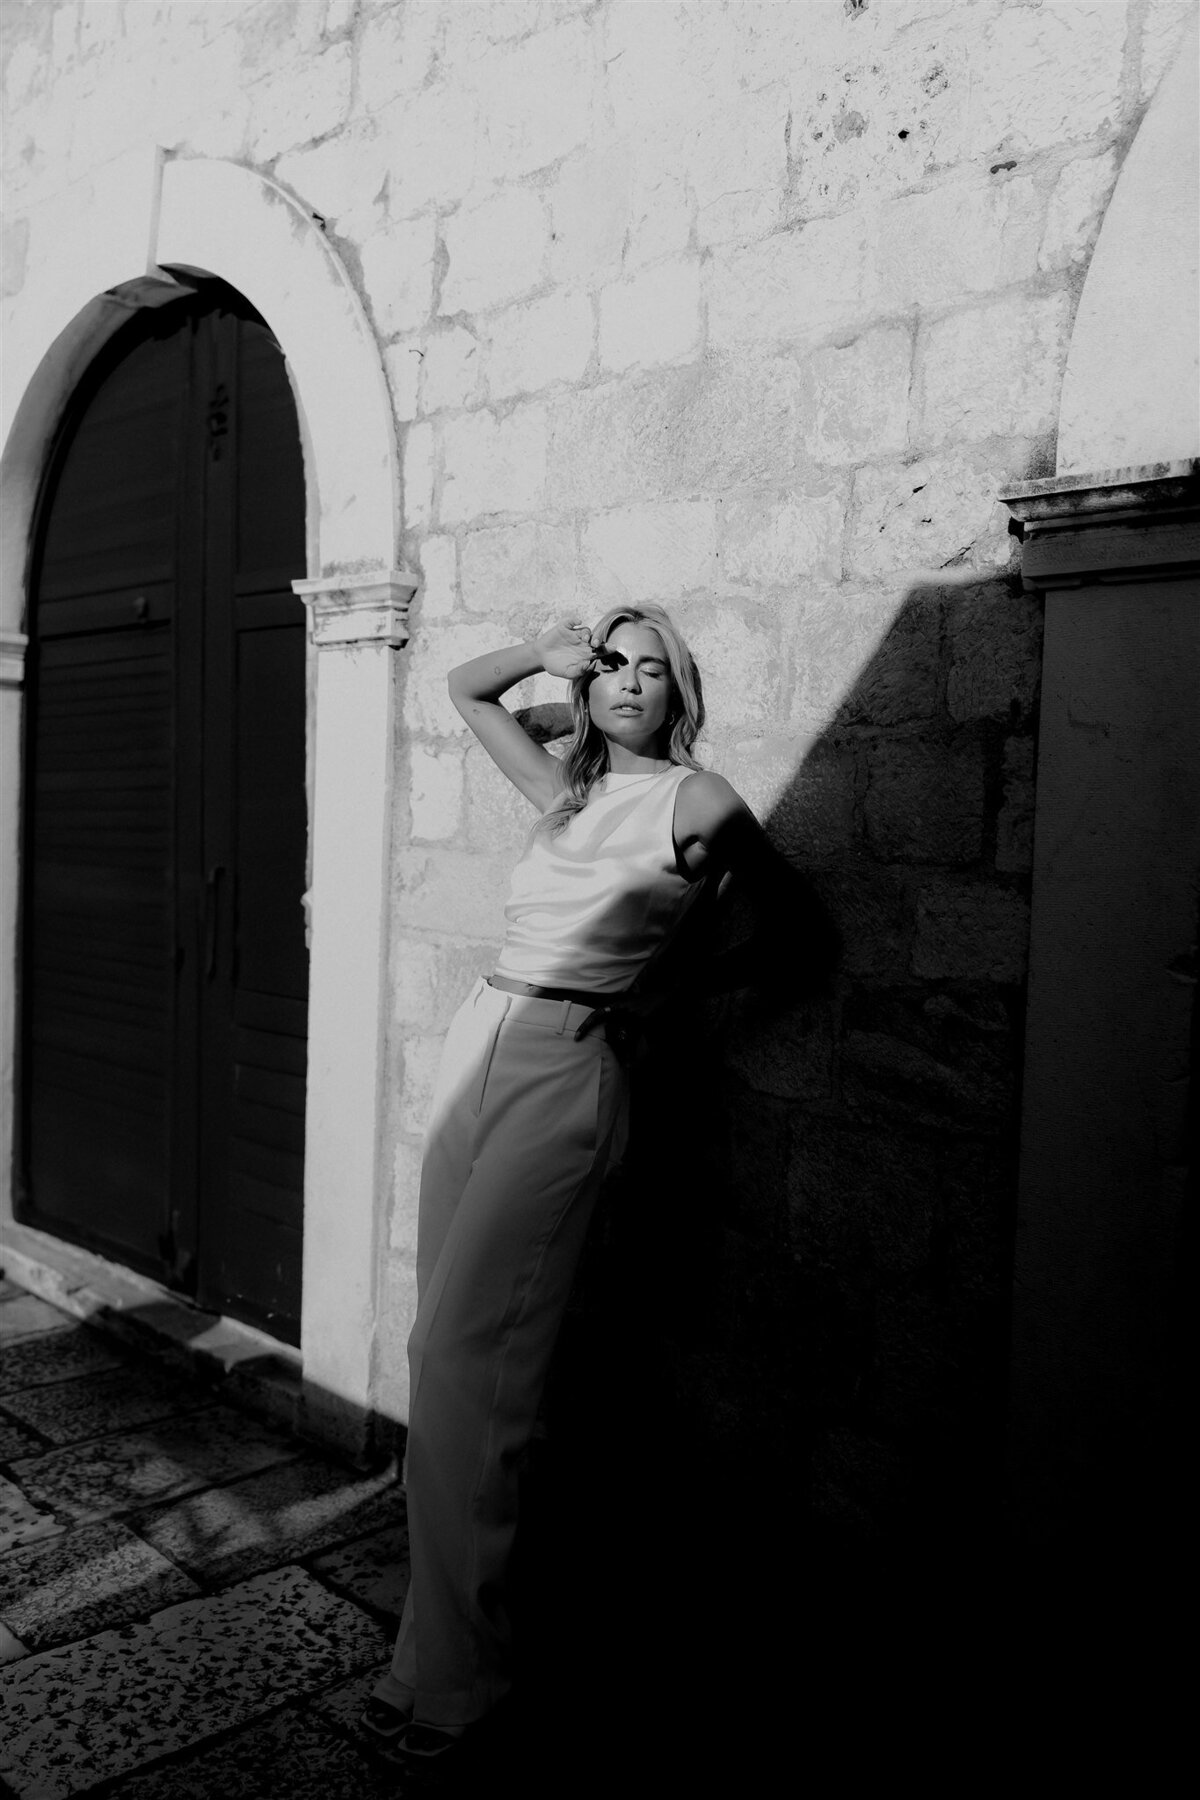 Maegan-Brown-Moments_230824_Croatia_Dubrovnik_Elena_Portraits_1095-Edit